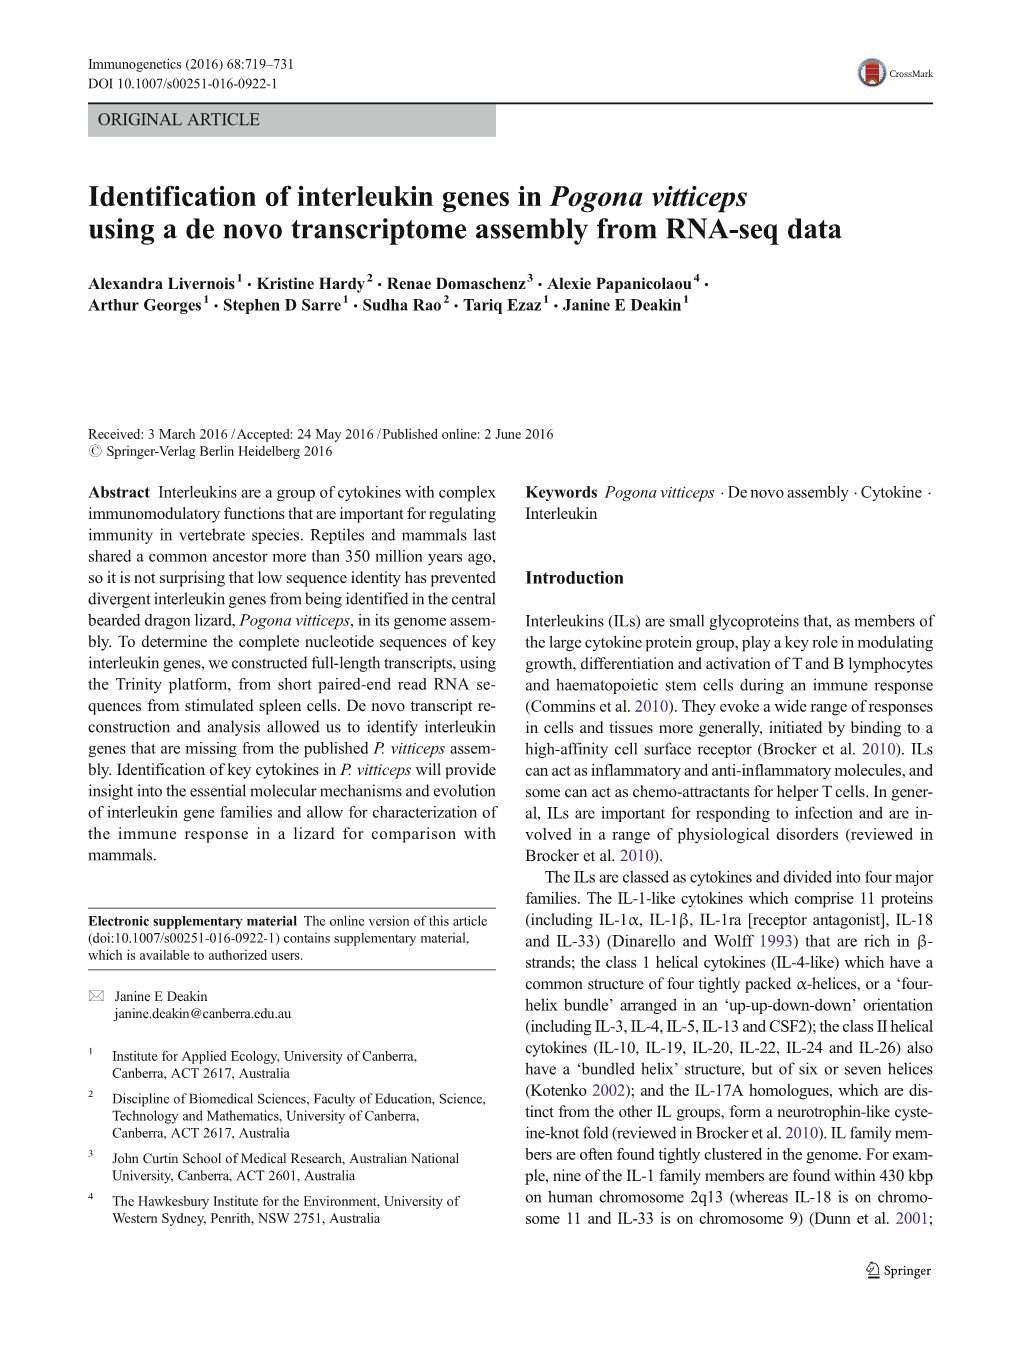 Identification of Interleukin Genes in Pogona Vitticeps Using a De Novo Transcriptome Assembly from RNA-Seq Data